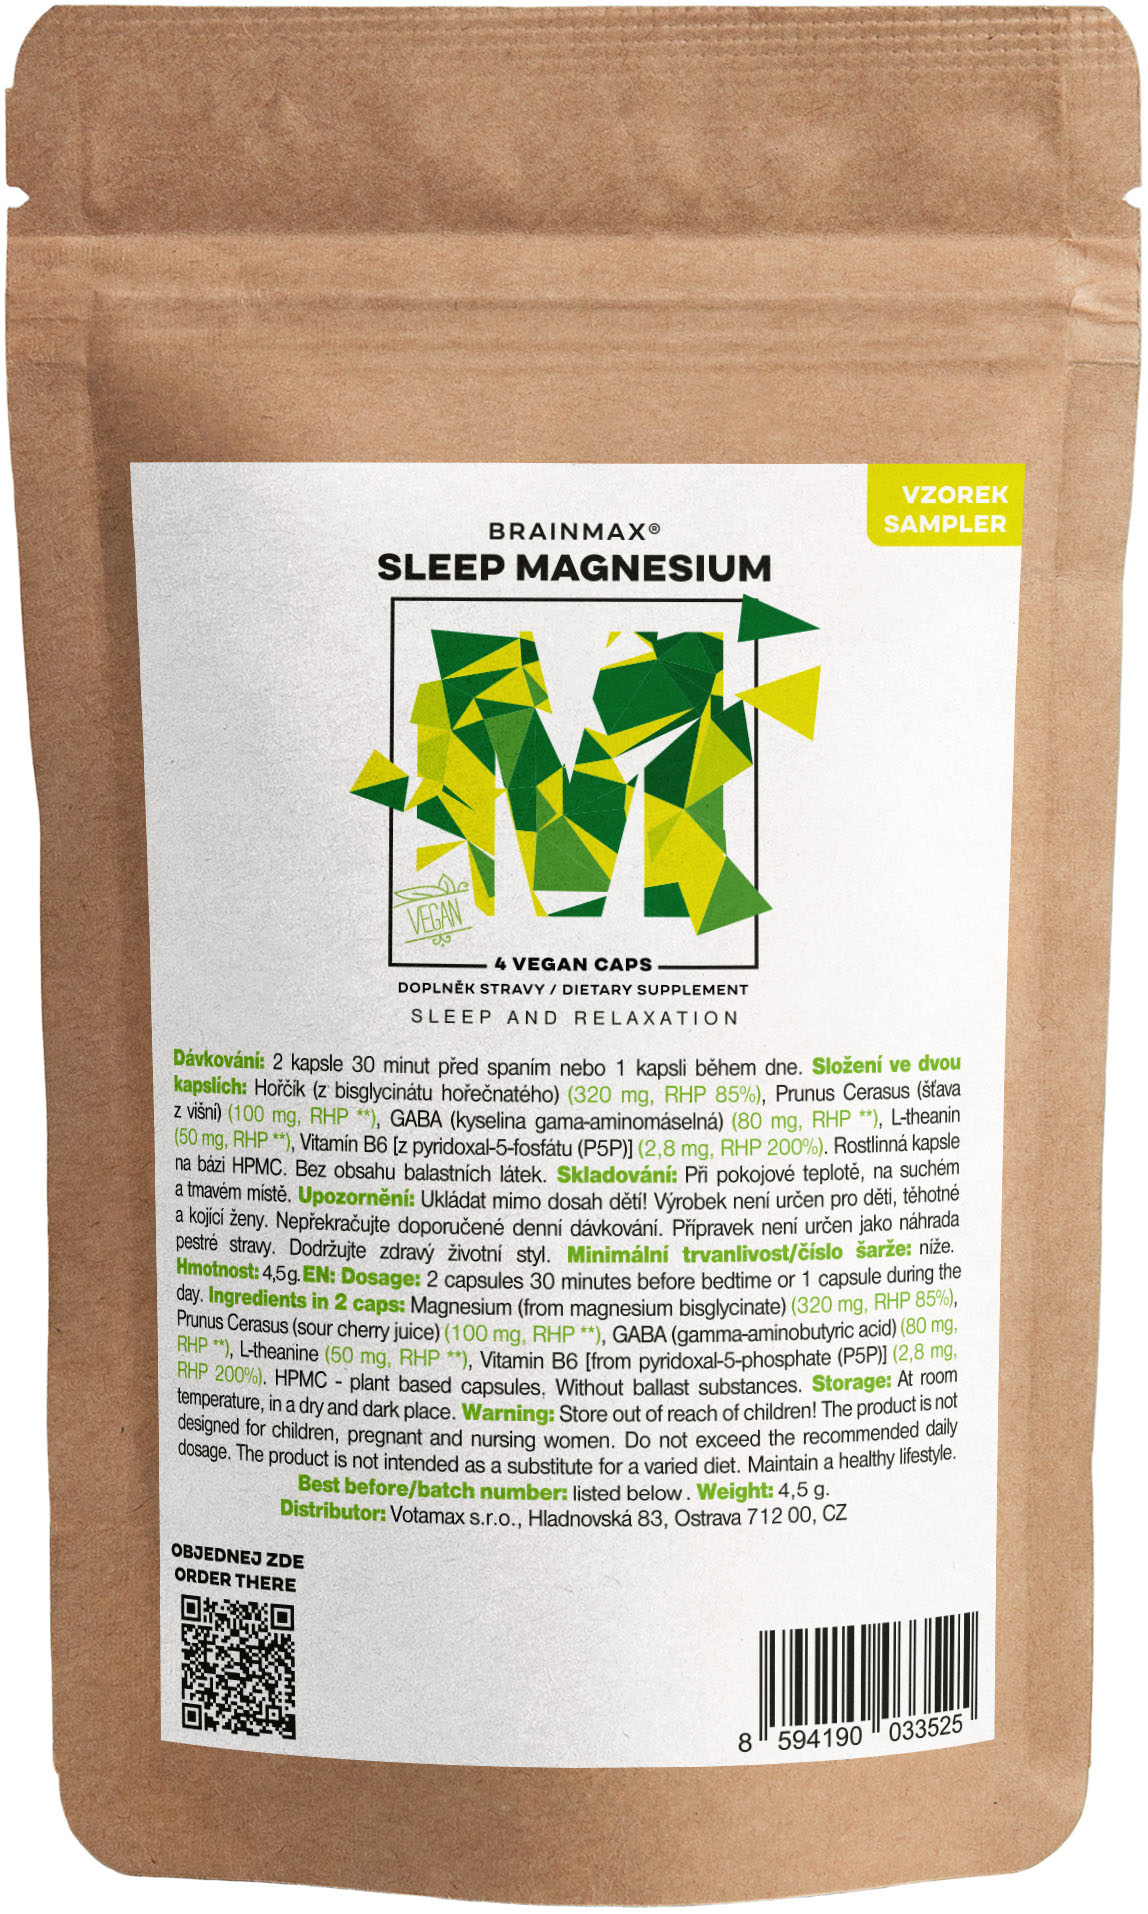 Levně BrainMax Sleep Magnesium, 4 kapsle, VZOREK